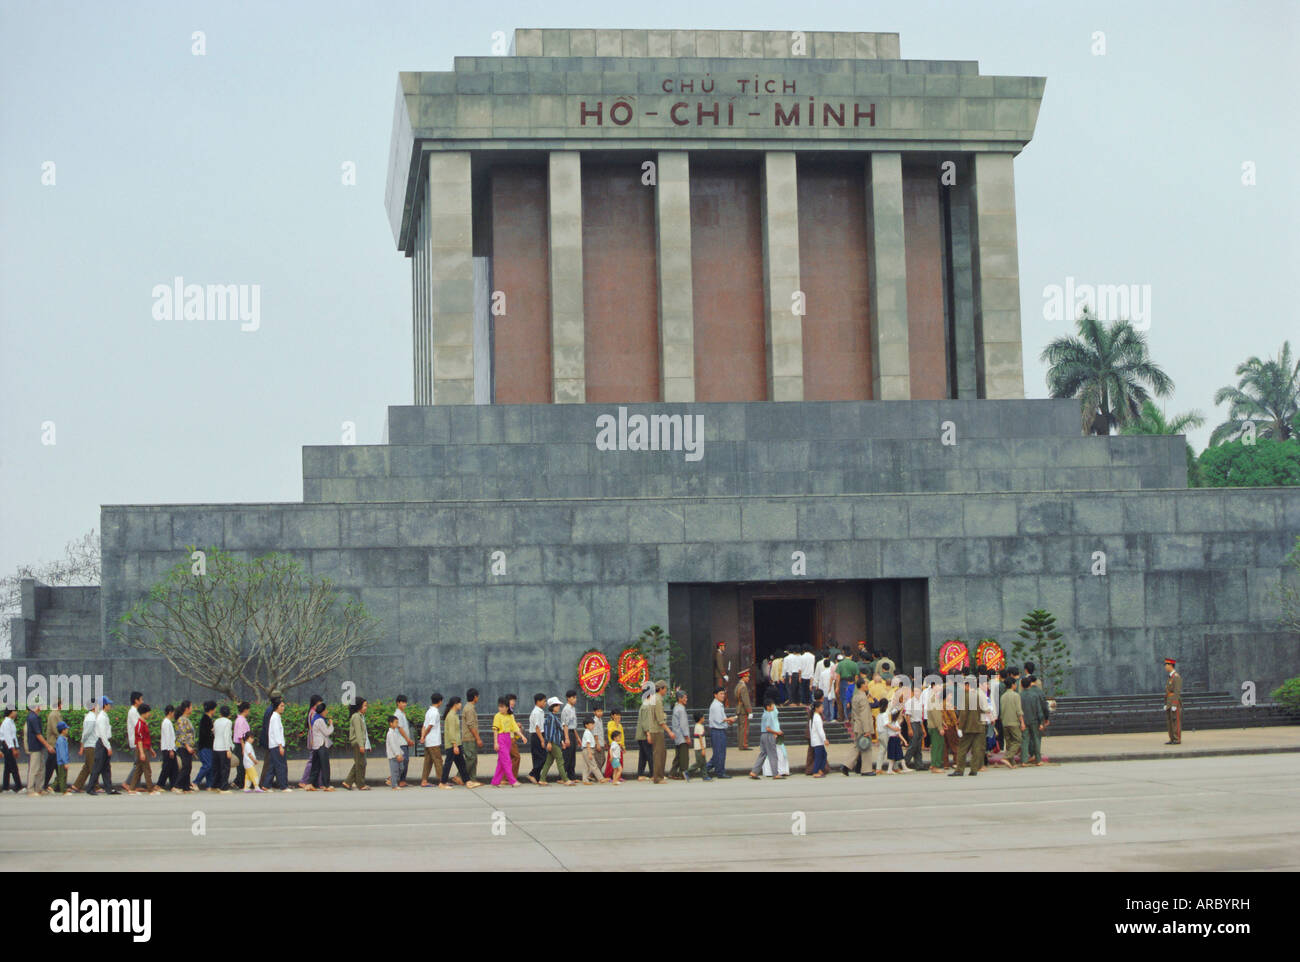 Ho Chi Minh's Tomb, Hanoi, Vietnam Stock Photo